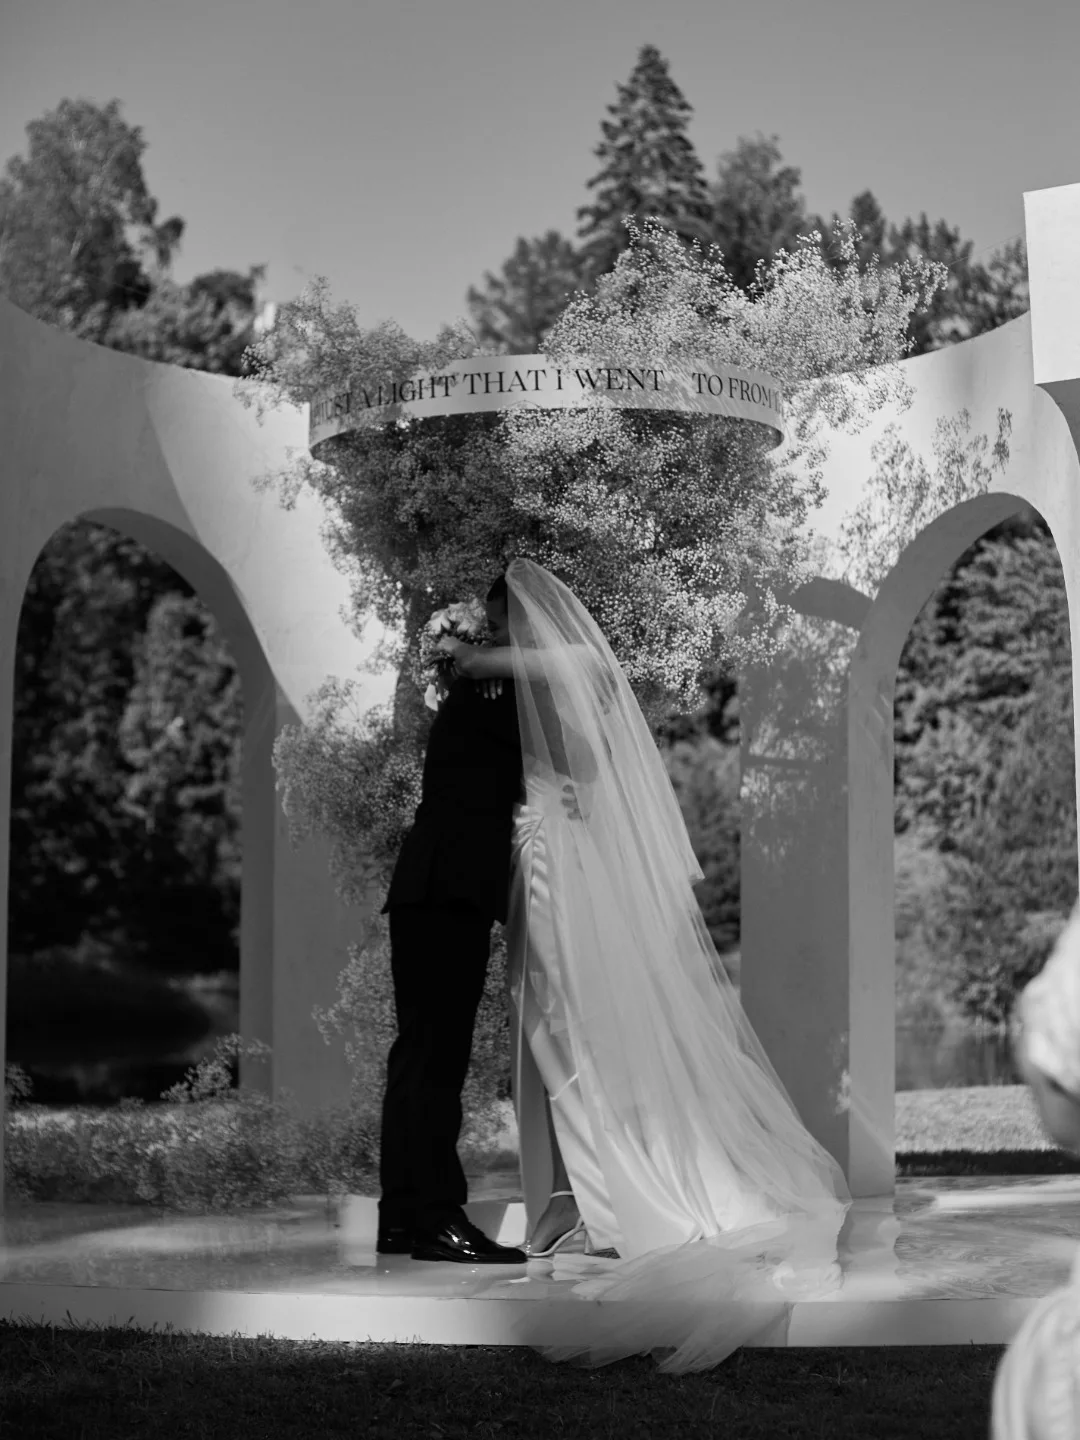 ФОТО ИЗ СТАТЬИ: Энергия неба и воздуха: романтичная свадьба в светлой гамме